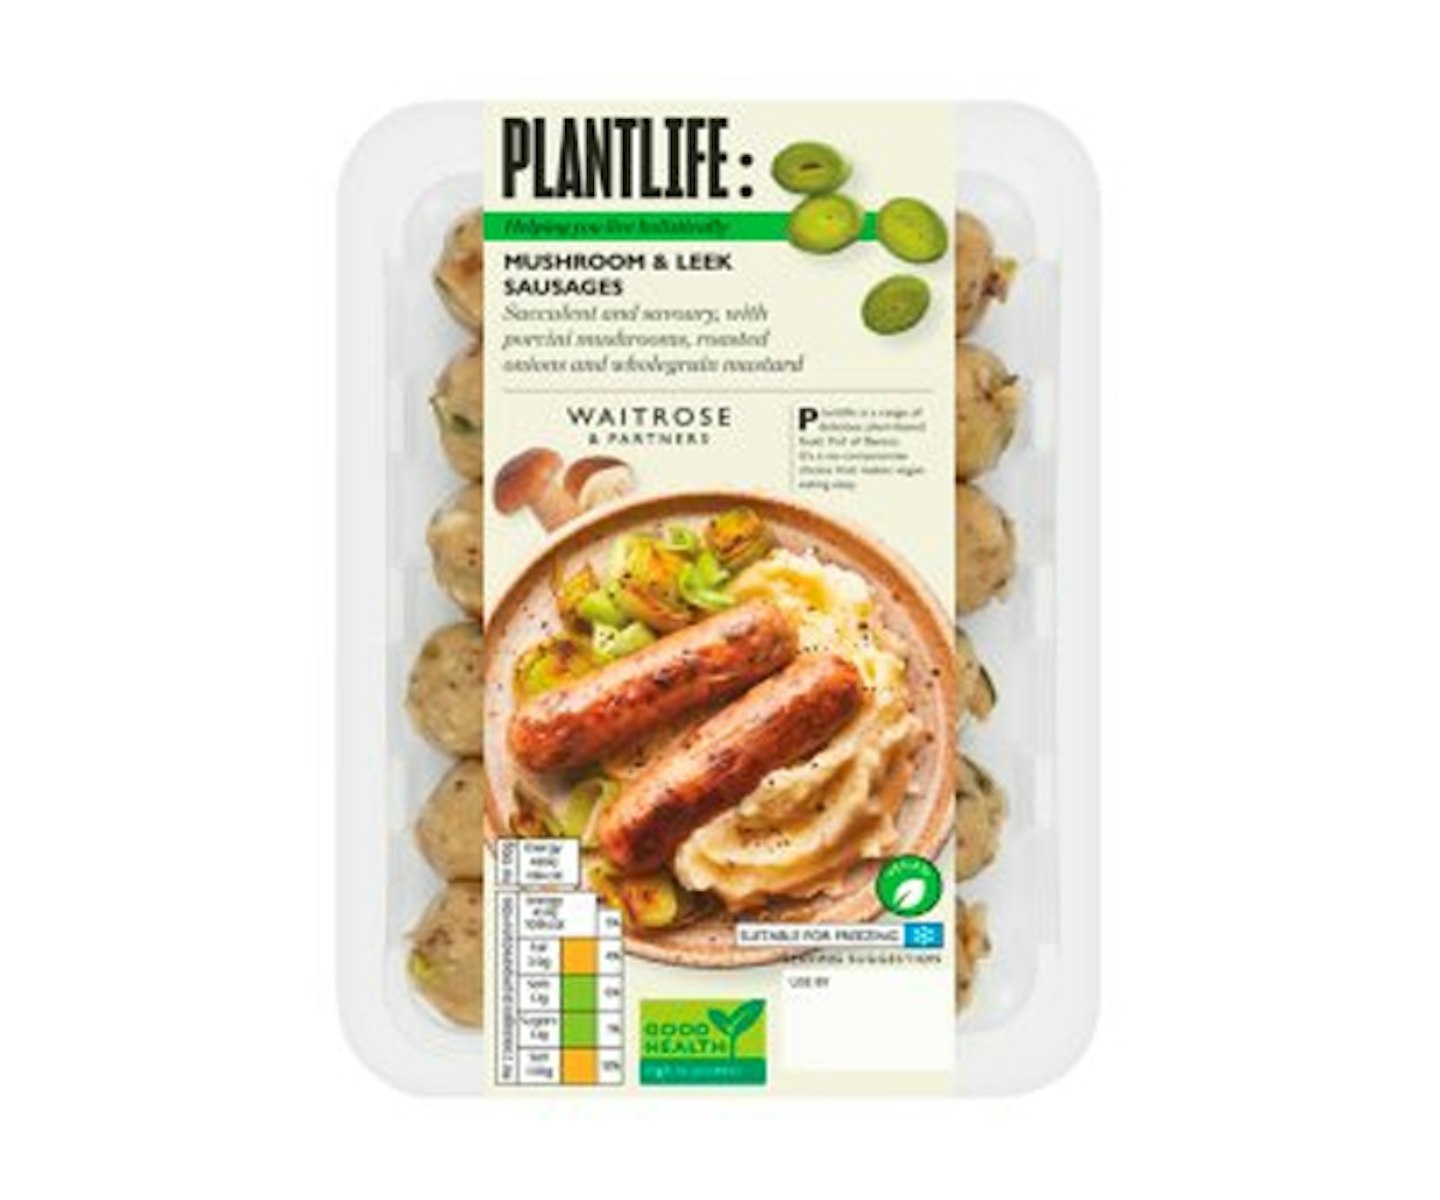 Plantlife Mushroom & Leek Sausages